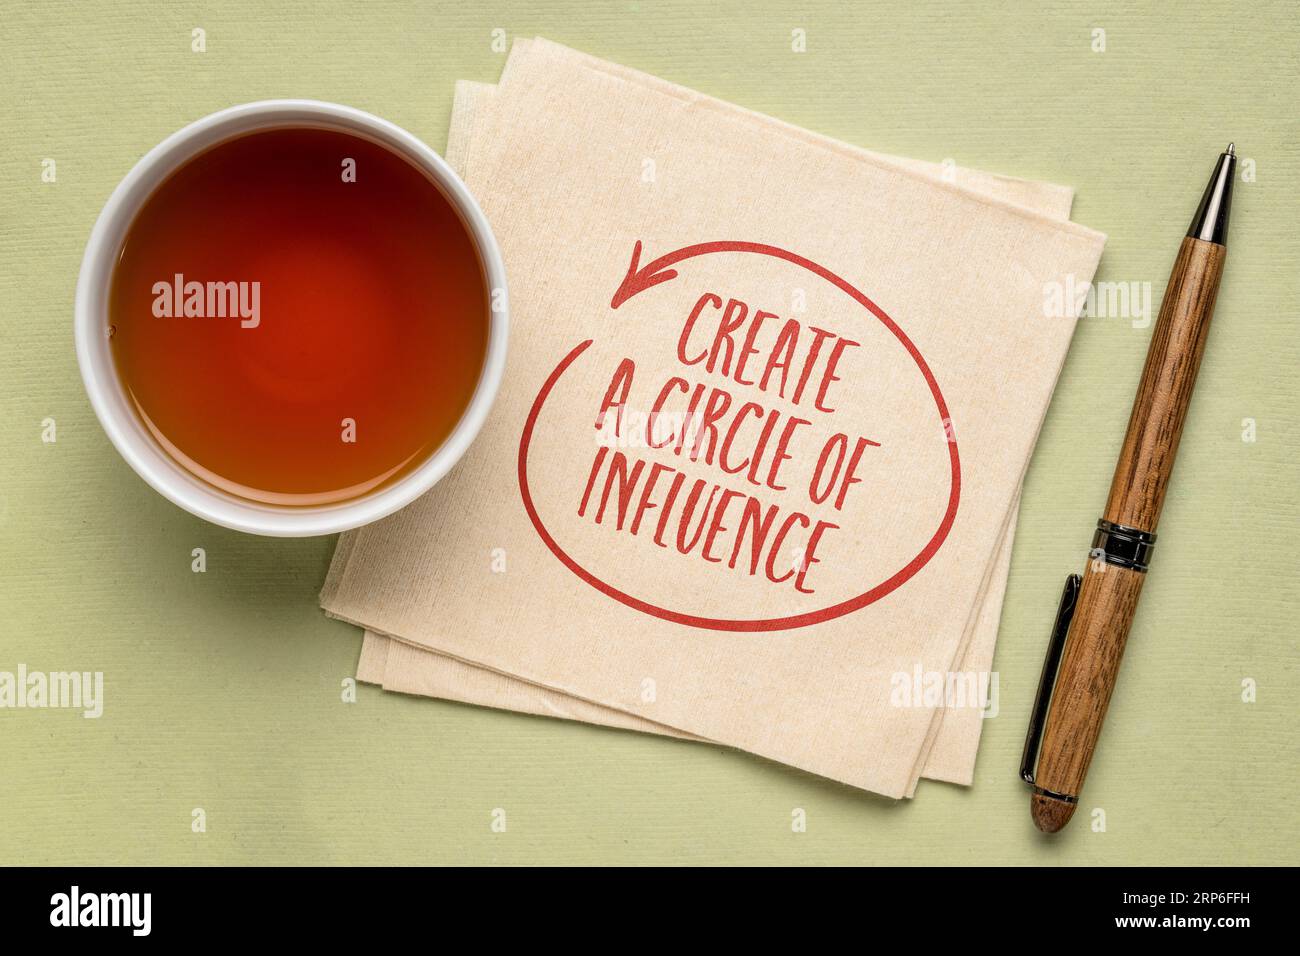 Créez un cercle de conseils d'influence - écriture inspirante sur une serviette avec une tasse de thé Banque D'Images